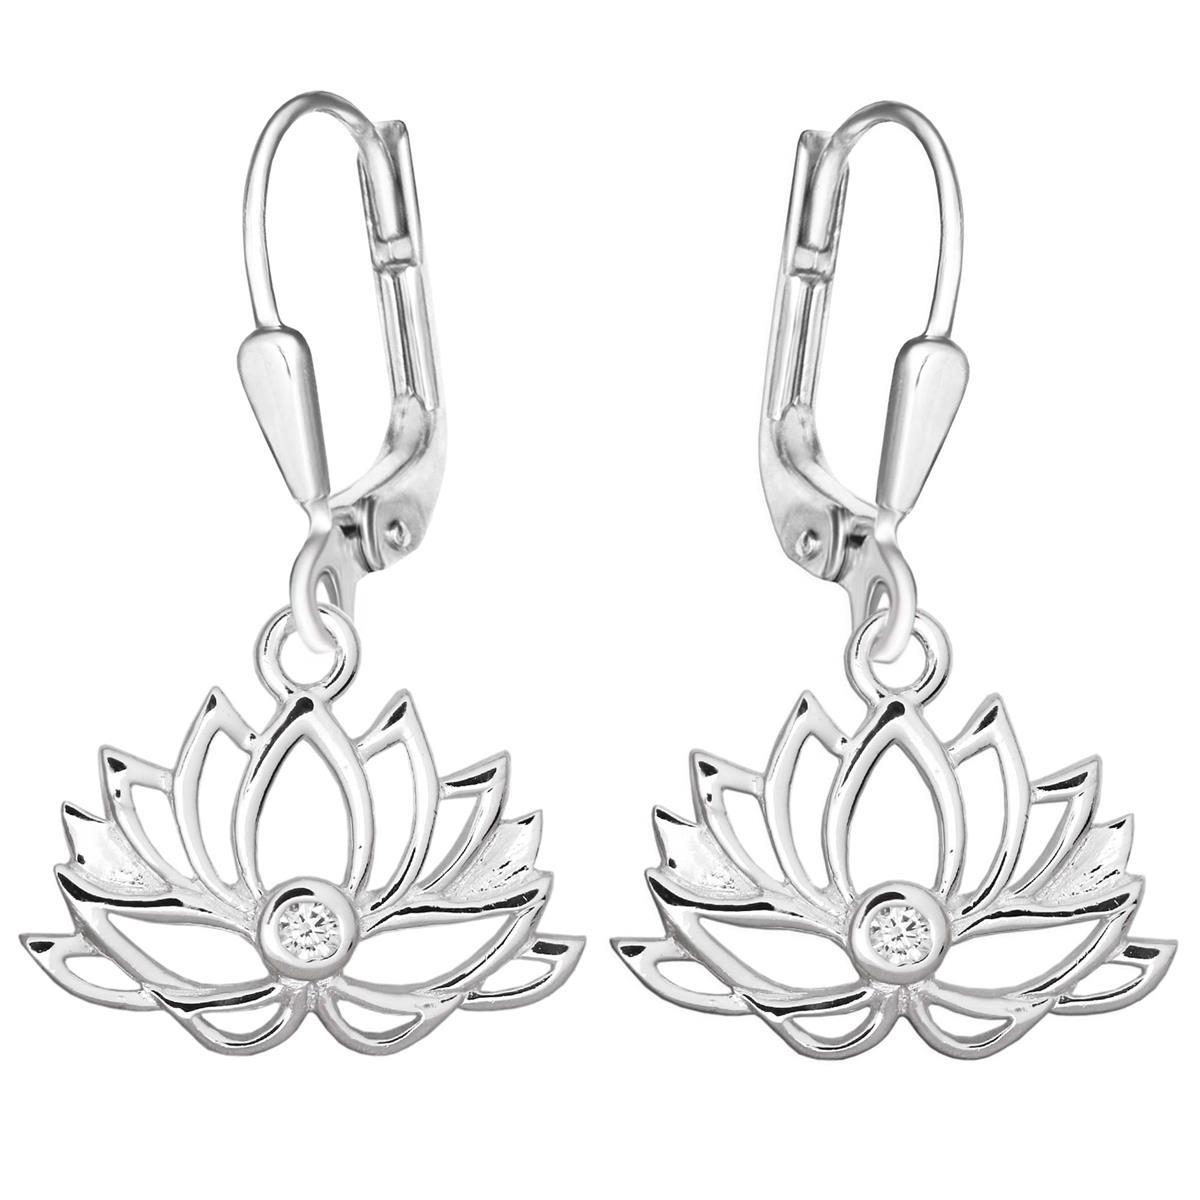 Silberne Lotusblüten Ohrhänger 11x17 mm mit Zirkonia weiß glänzend STERLING SILBER 925